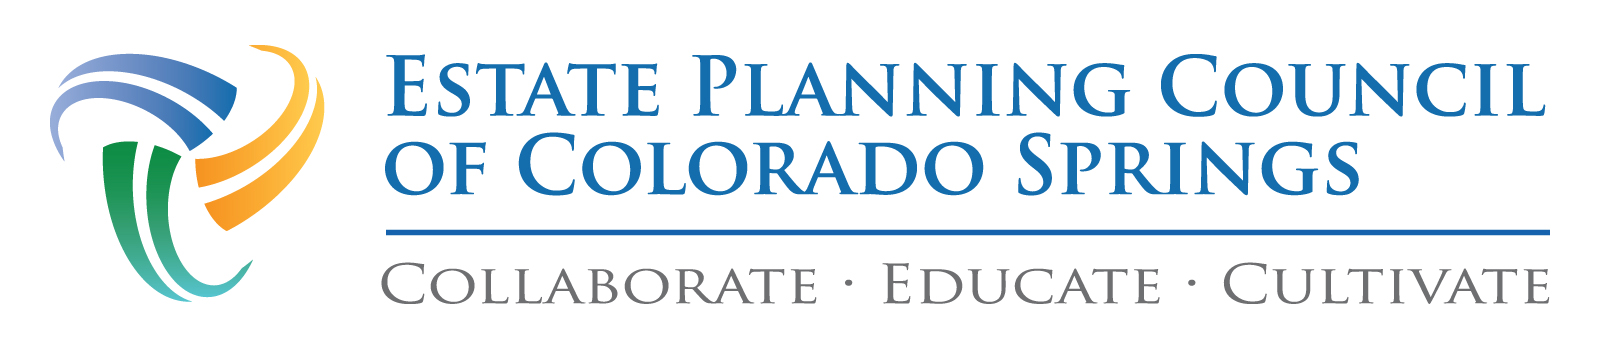 Estate Planning Council of Colorado Springs